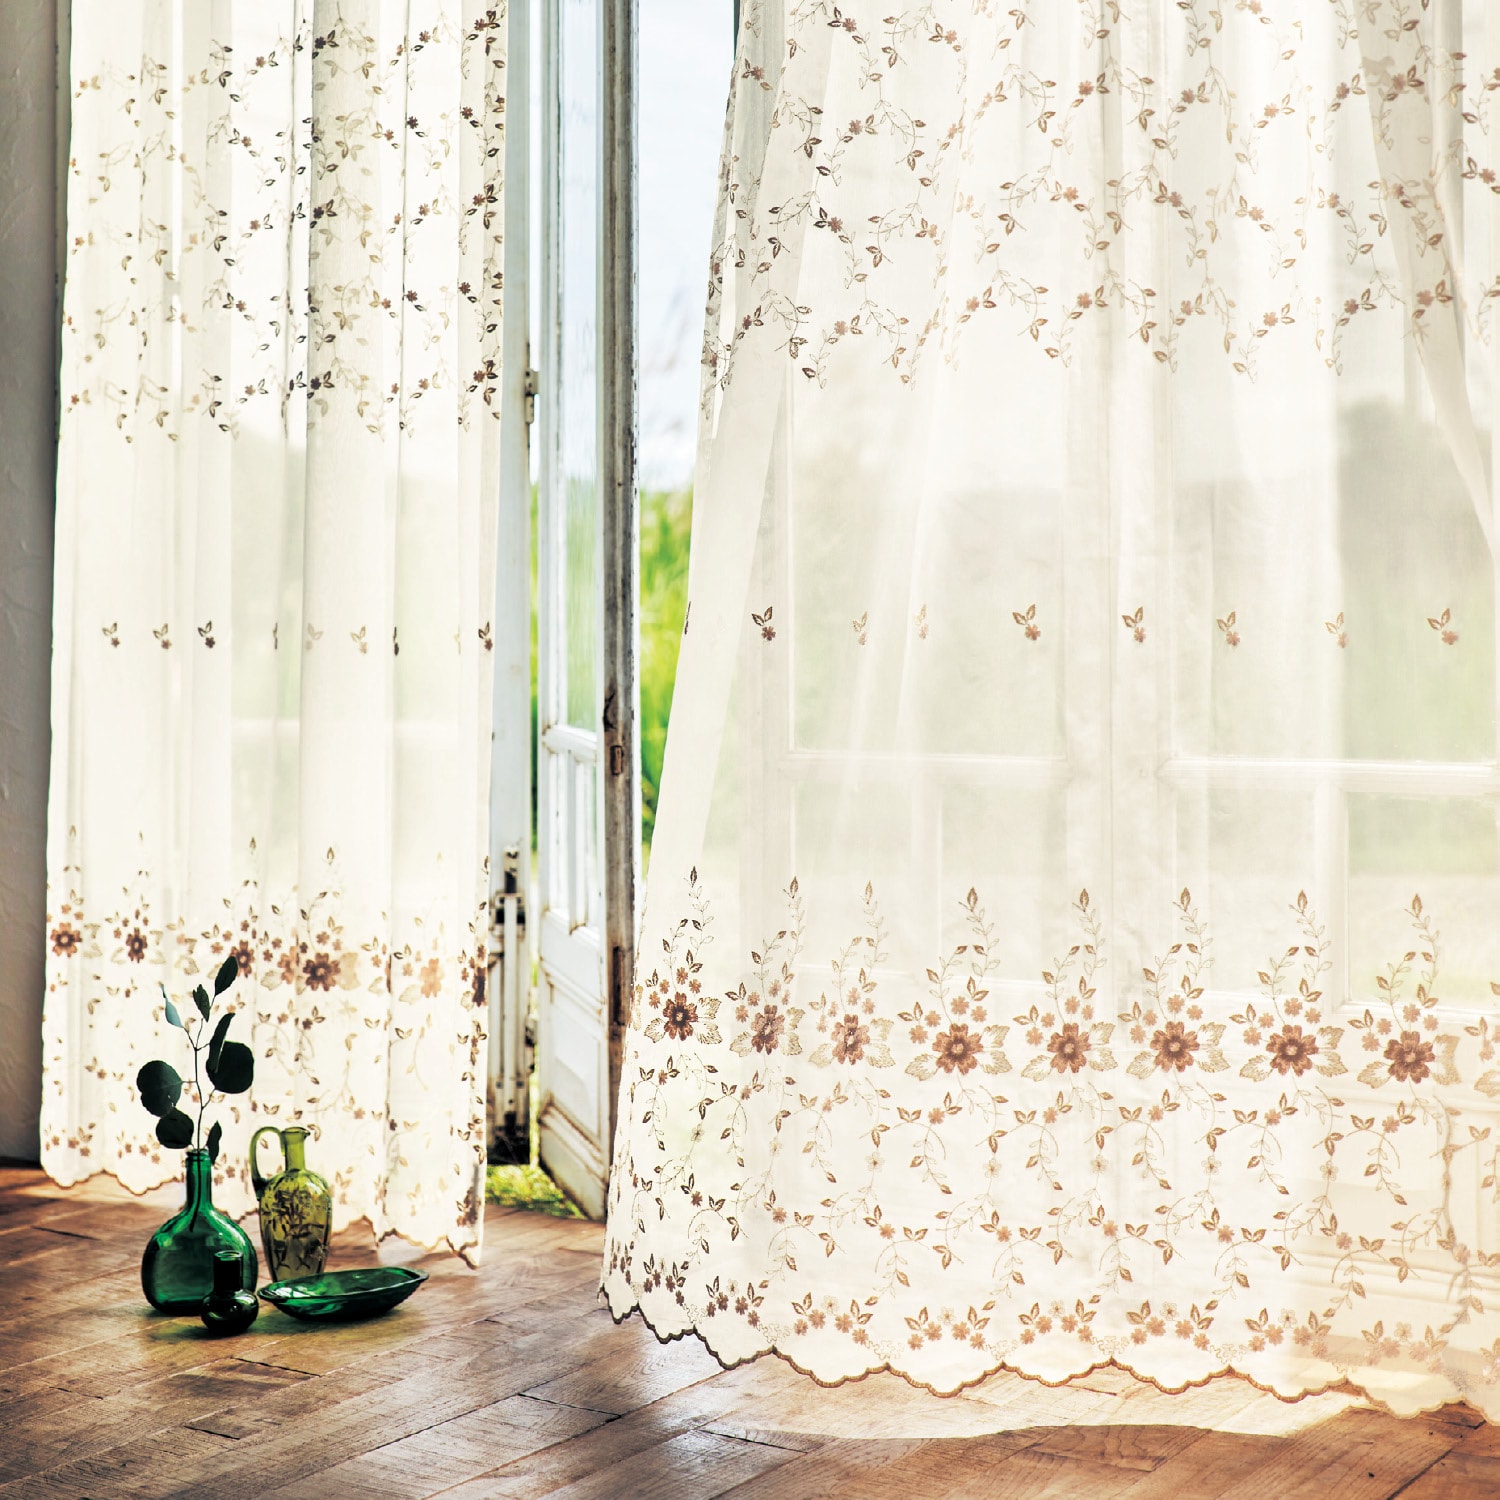 裾トリム トルコ刺繍レース生地 バラ柄 小窓 カフェカーテン - カーテン